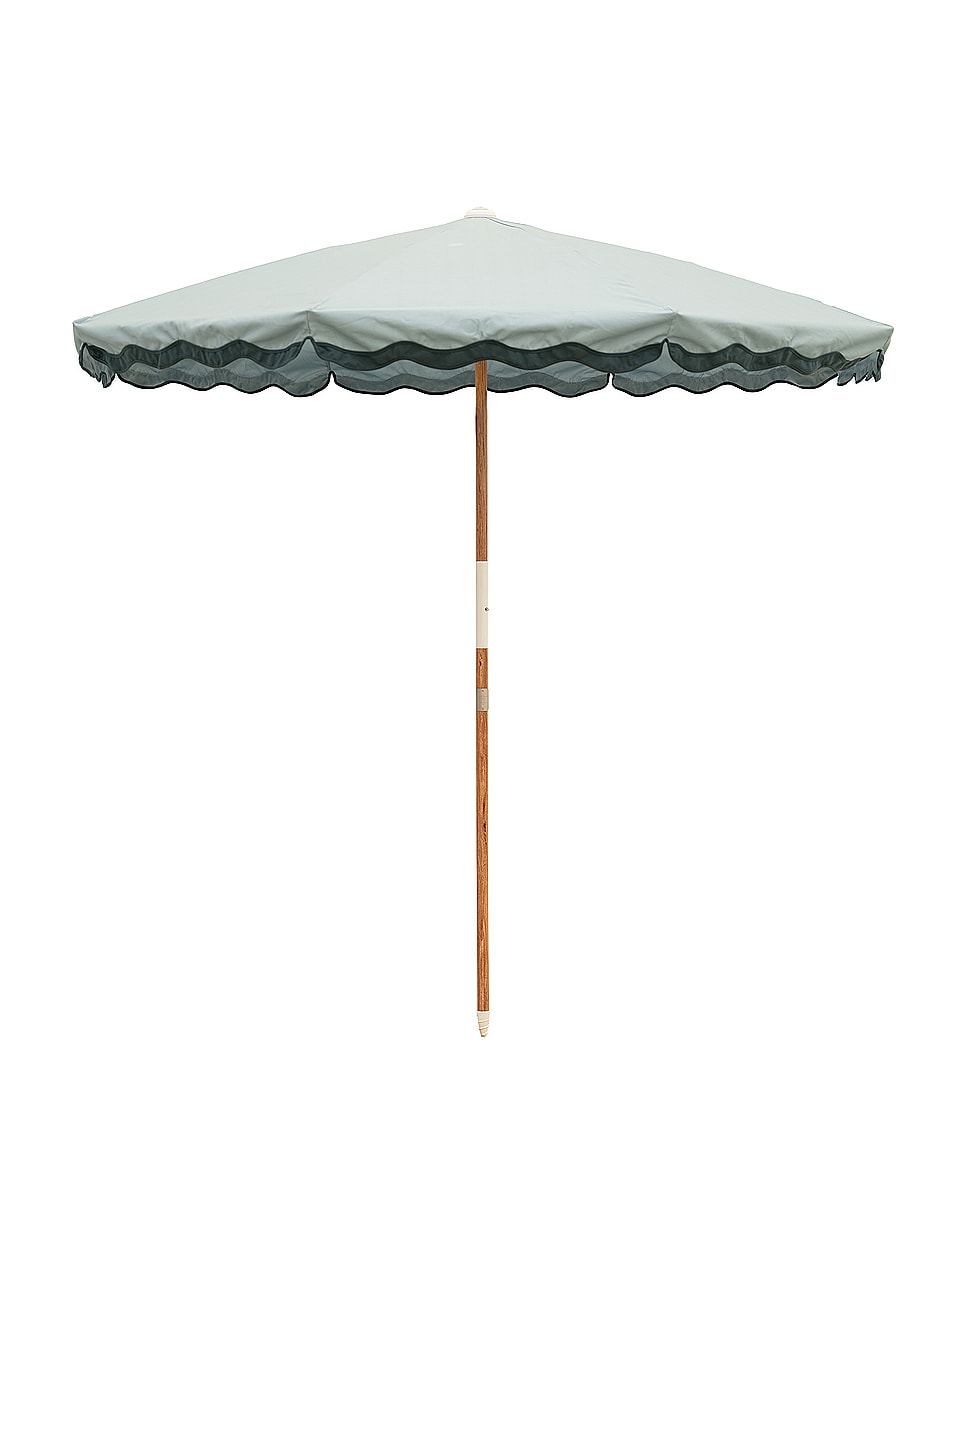 Image 1 of business & pleasure co. Amalfi Umbrella in Riviera Green